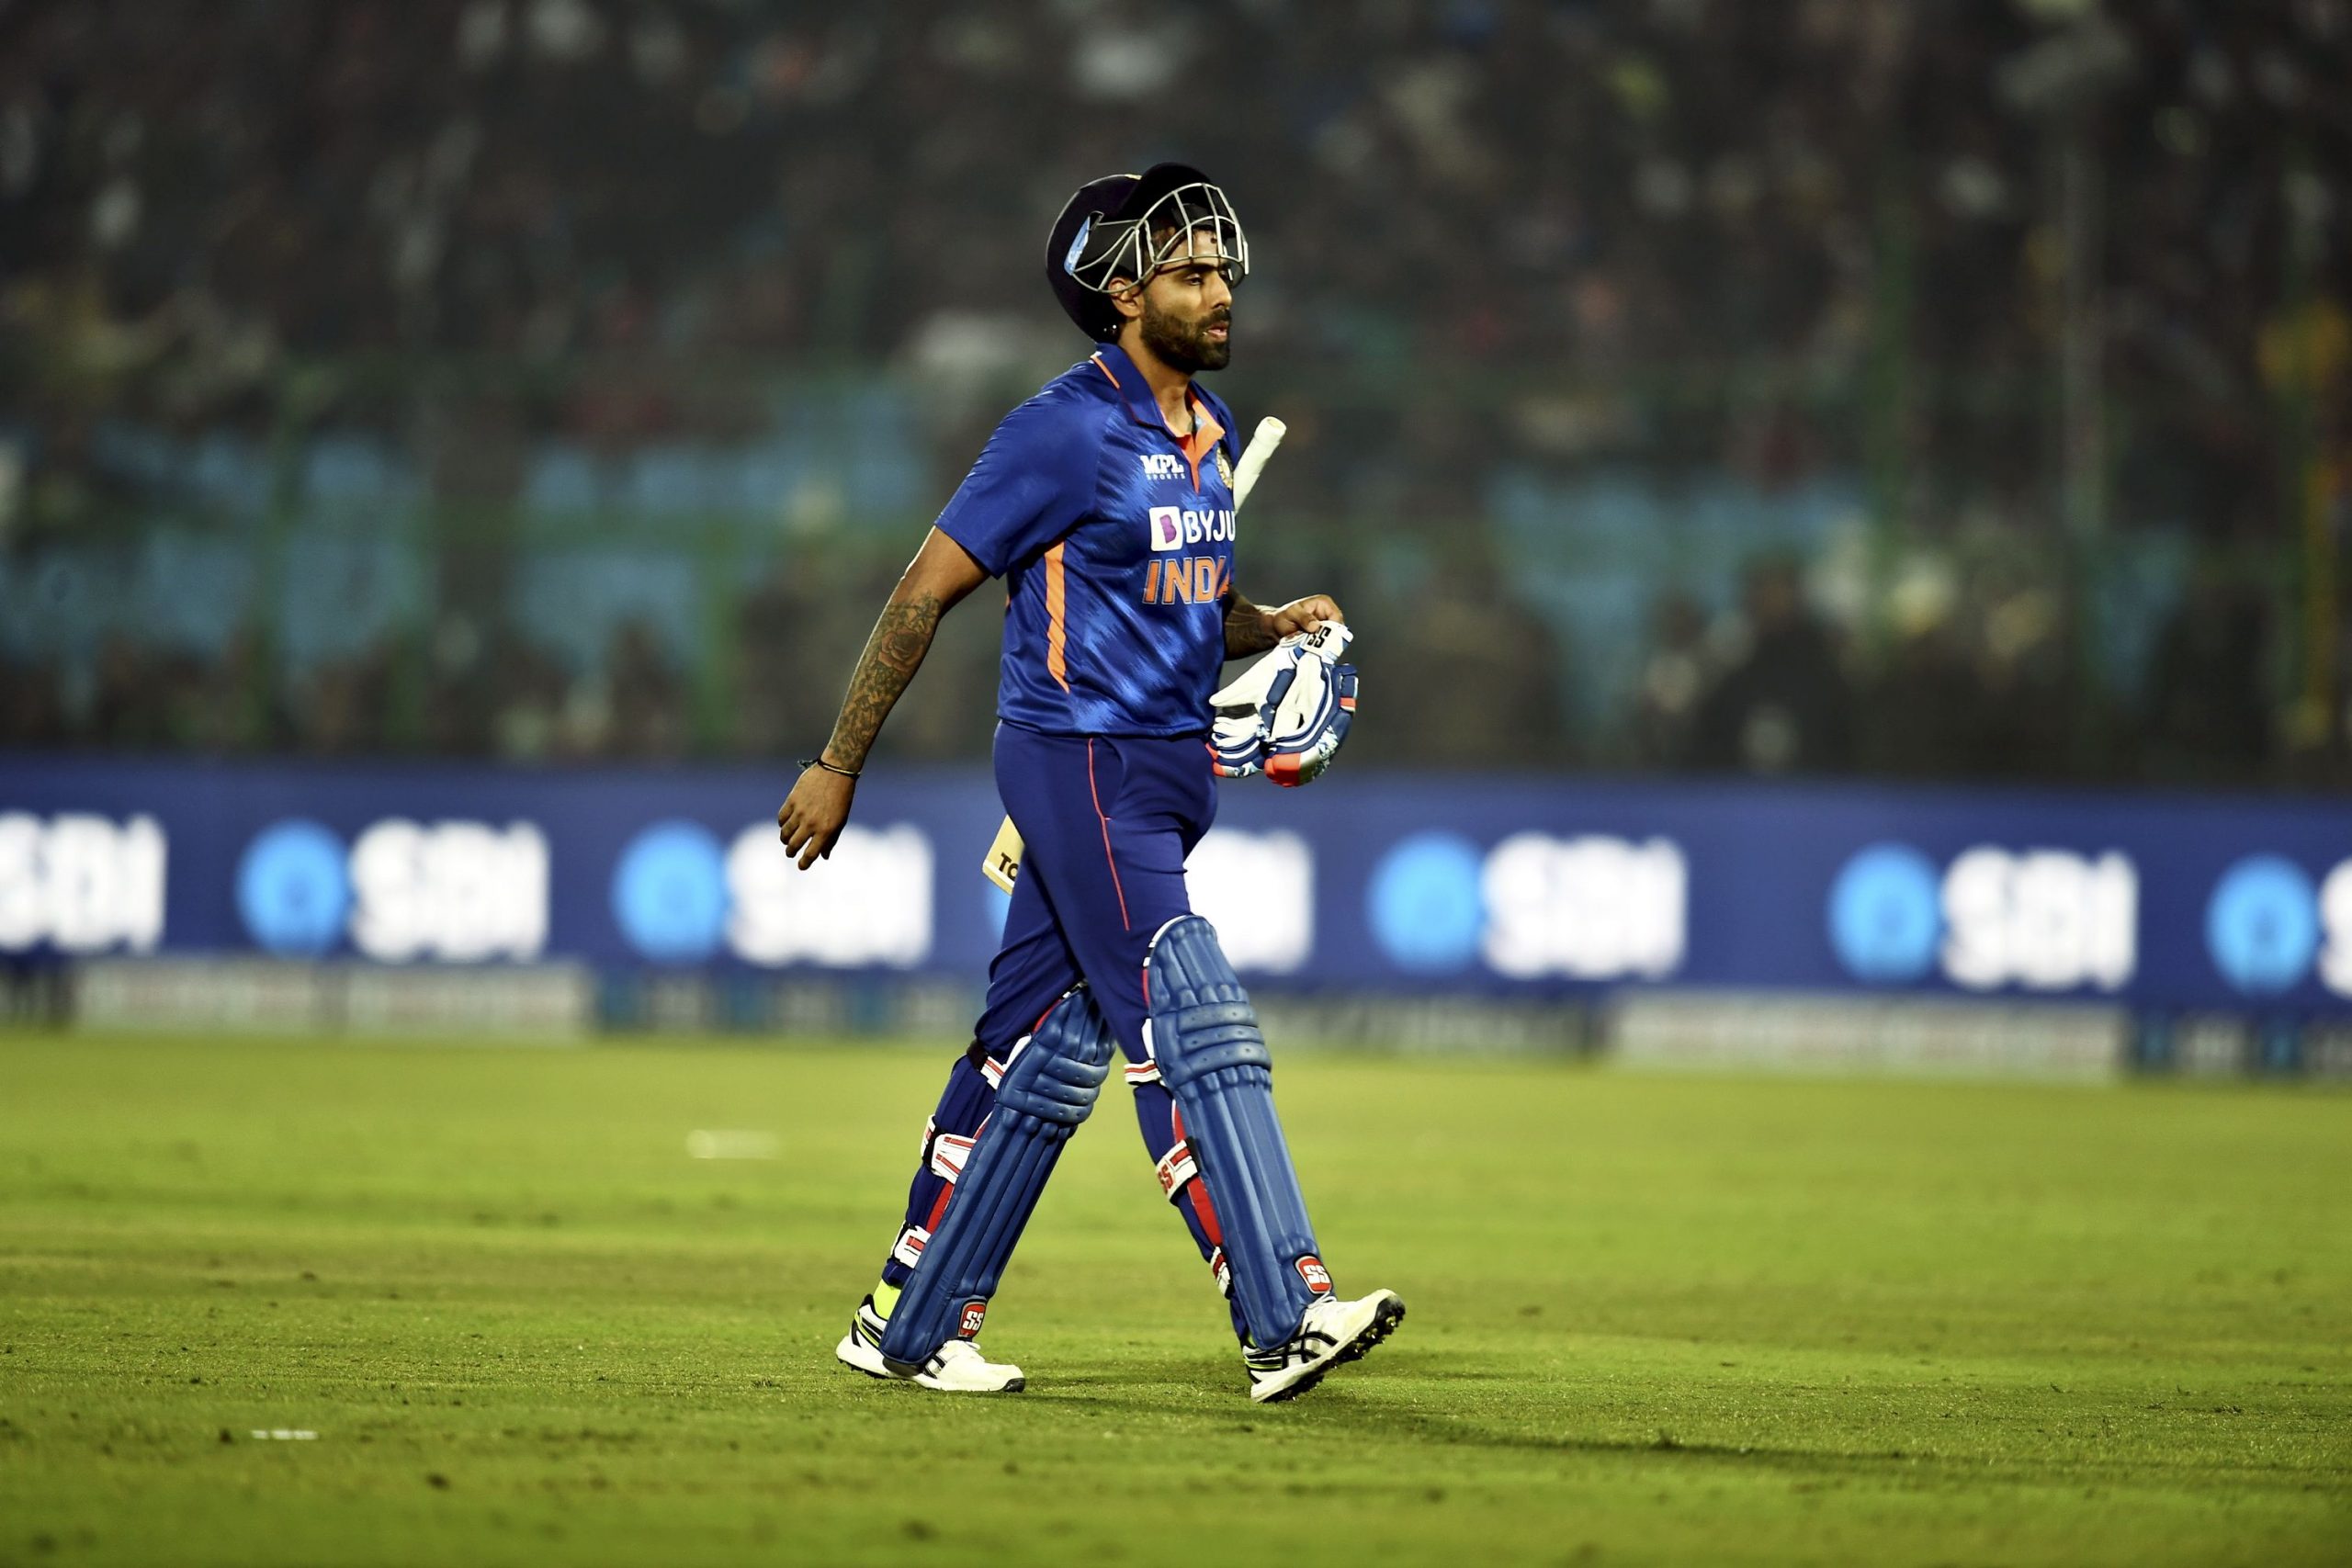 सूर्यकुमार यादव ने पहली 6 ODI पारियों में ही रच दिया इतिहास, ऐसा करने वाले दुनिया के पहले बल्लेबाज बने